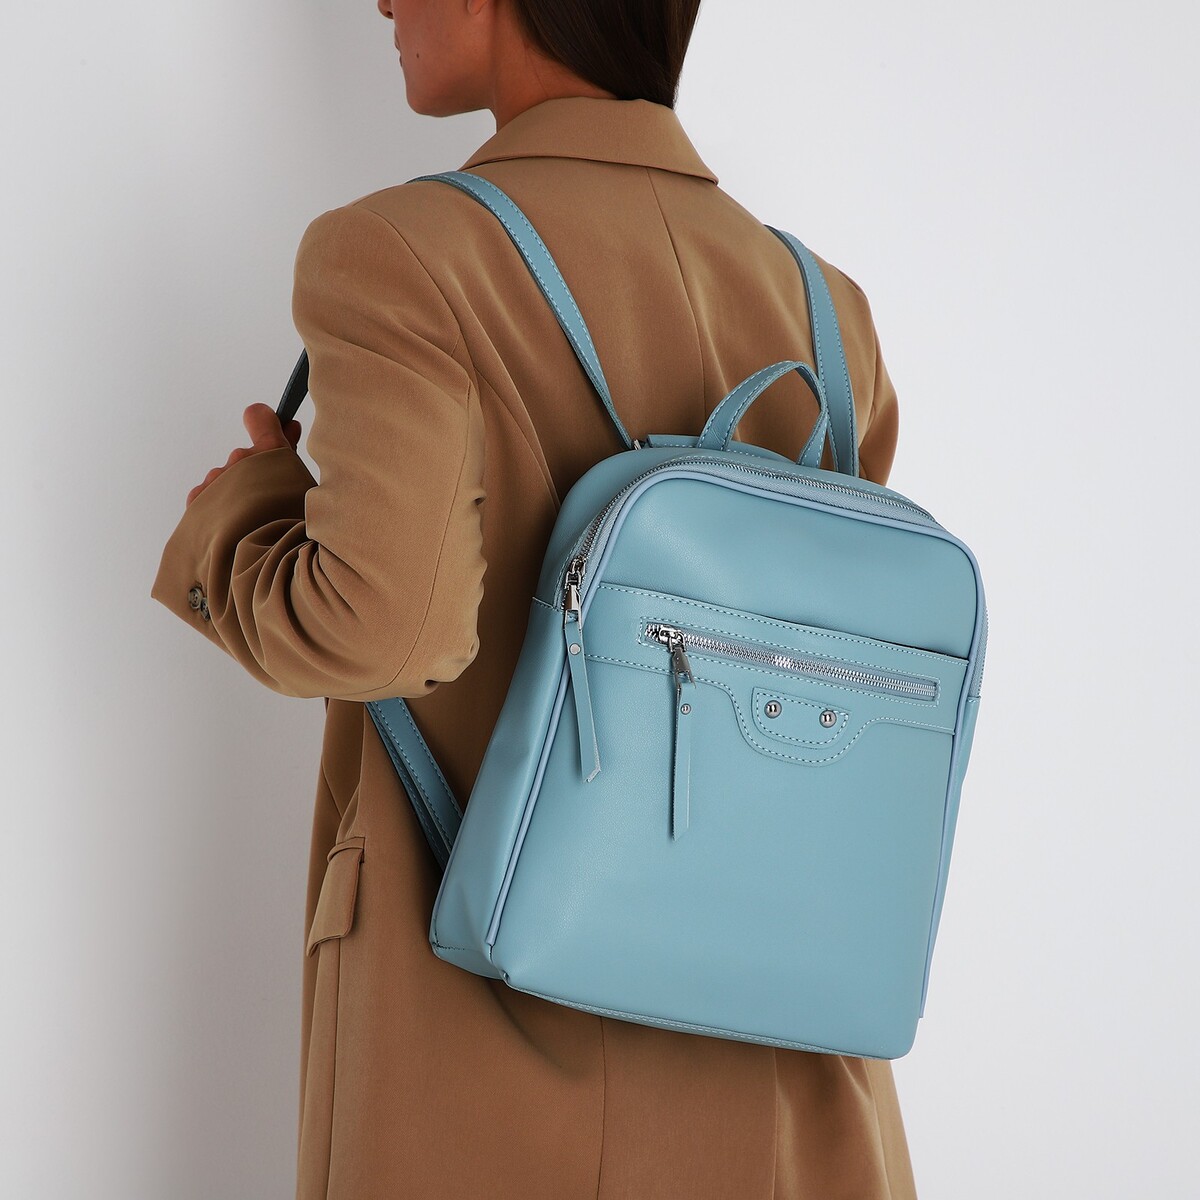 Рюкзак женский из искусственной кожи на молнии, 3 кармана, цвет голубой рюкзак женский из искусственной кожи на молнии 3 кармана